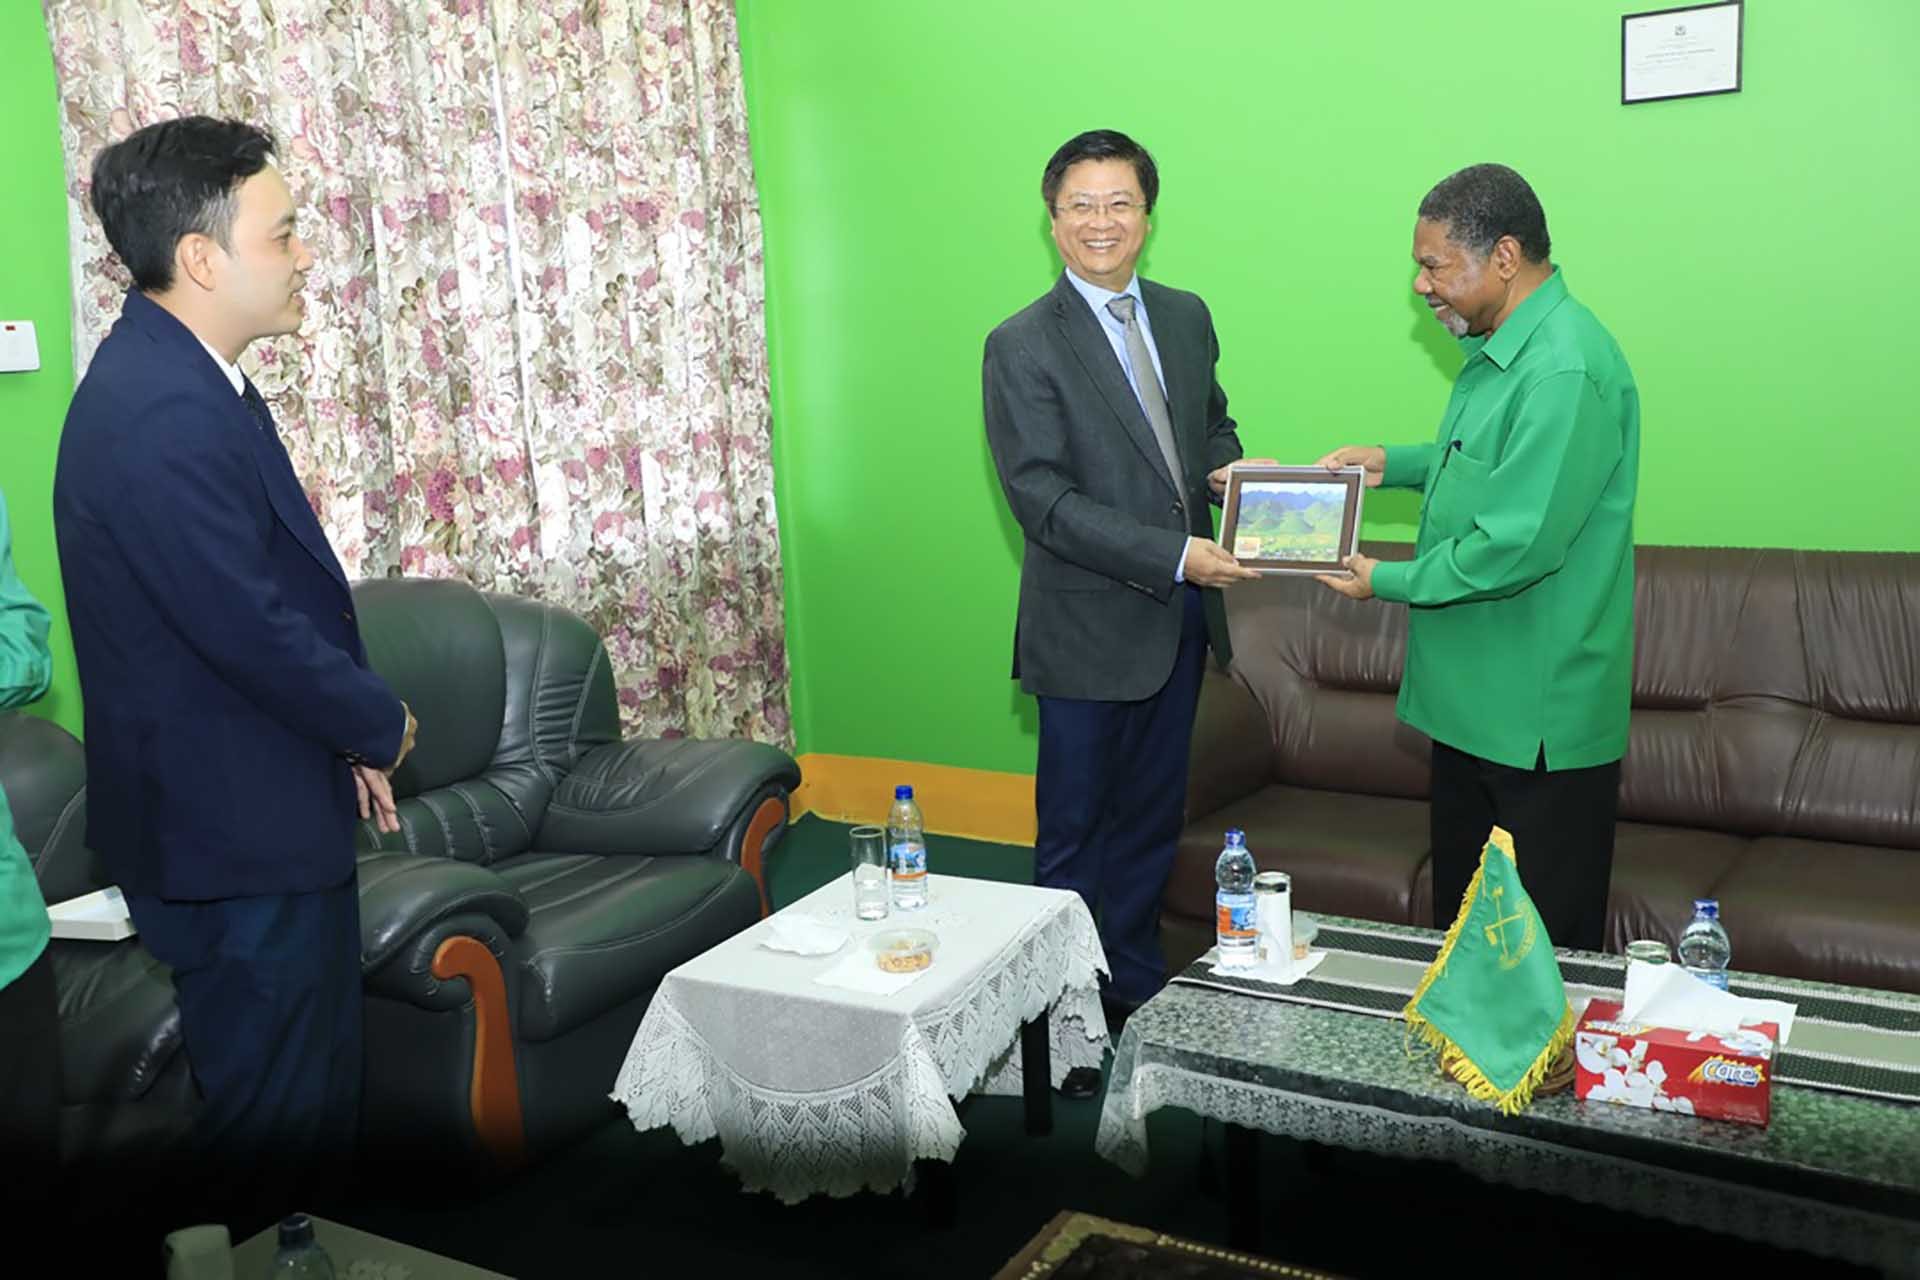 Đồng chí Trương Quang Hoài Nam chào xã giao Phó Chủ tịch Đảng, cựu Tổng thống khu bán tự trị Zanzibar.